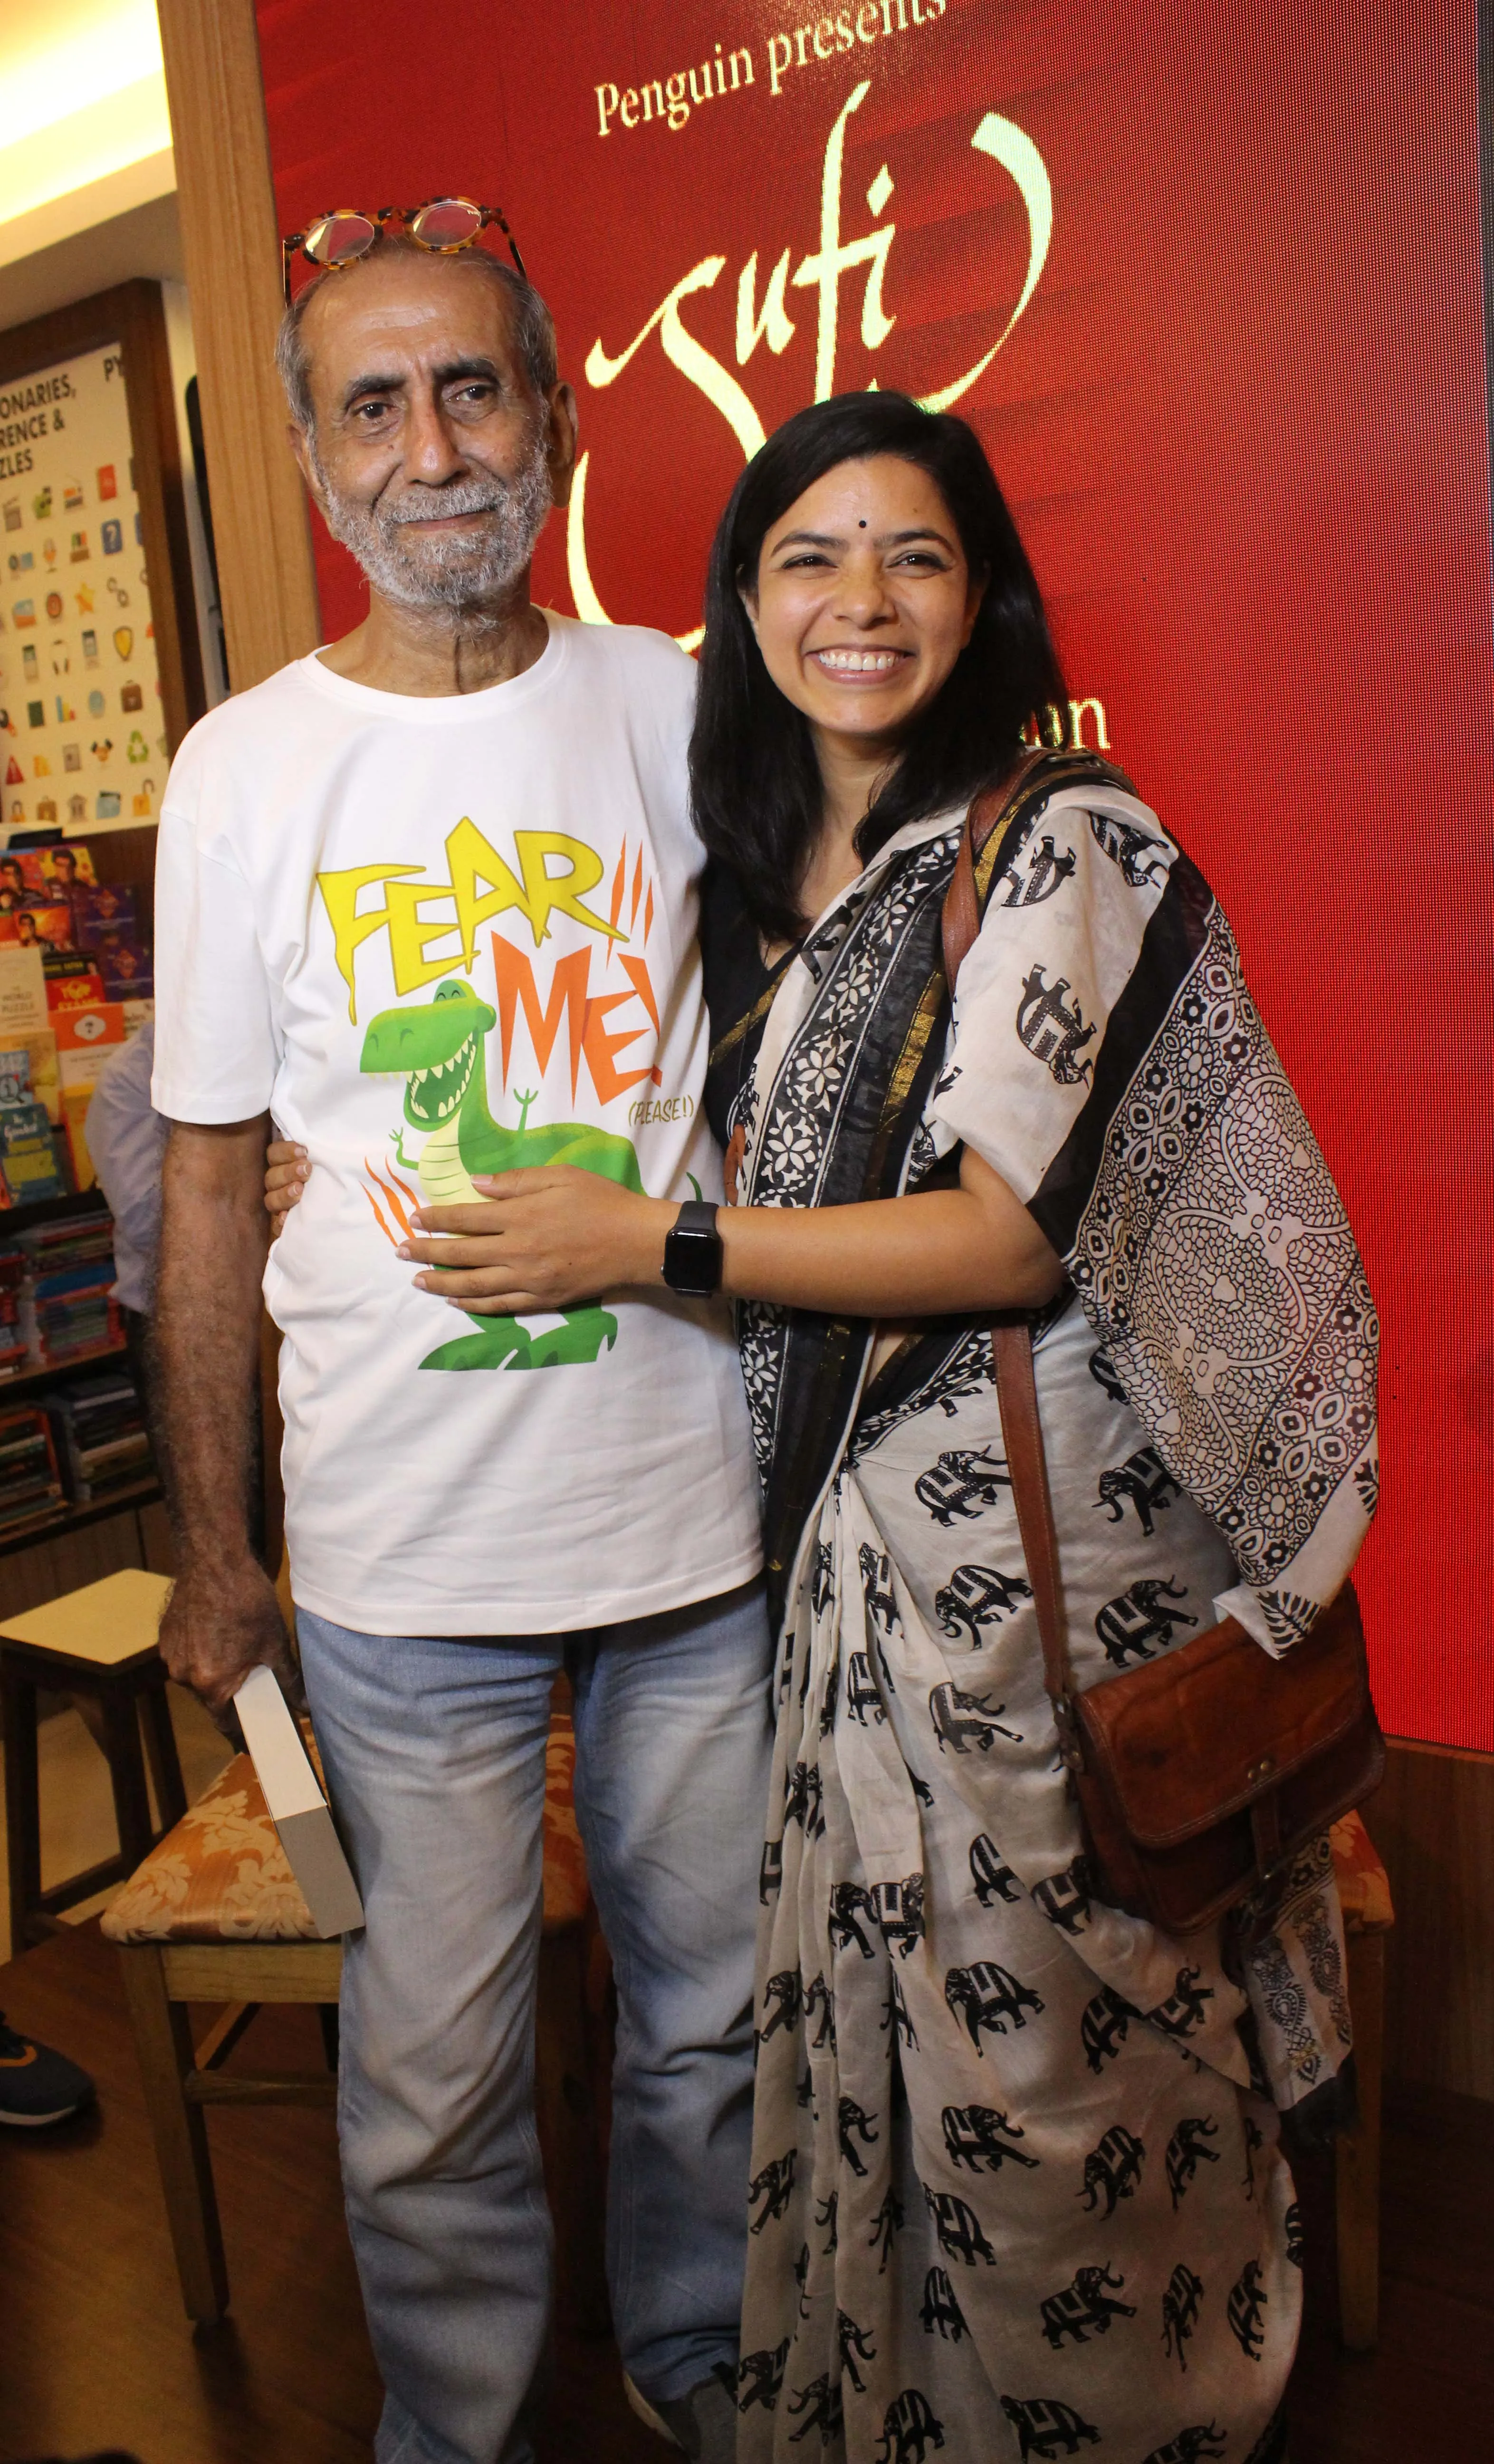 निर्देशक श्रीराम राघवन ने लॉन्च की राष्ट्रीय पुरस्कार प्राप्त लेखक आबिद सुरती की पुस्तक सूफी द इनविजिबल मैन ऑफ द अंडरवर्ल्ड